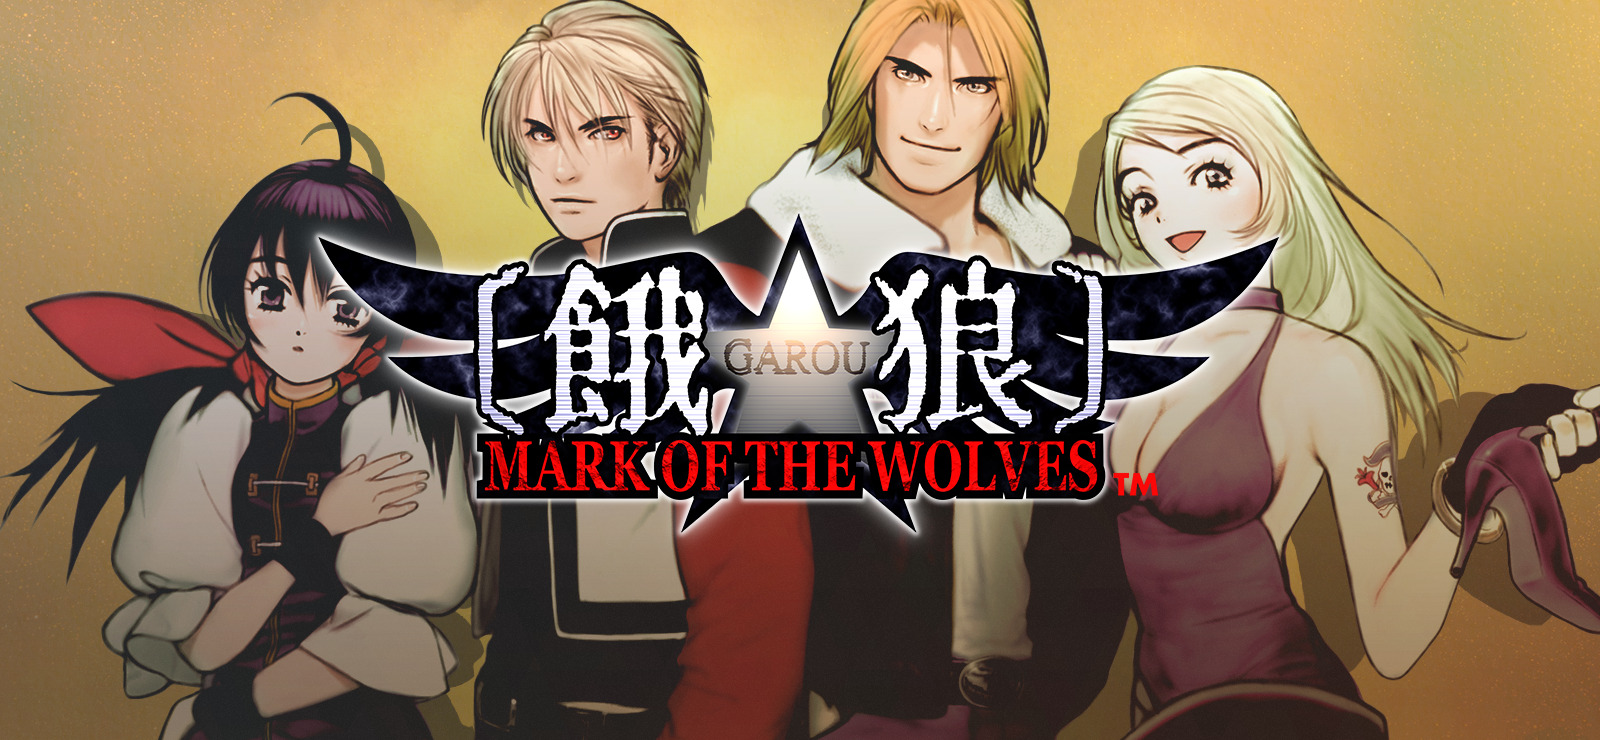 garou mark of the wolves art